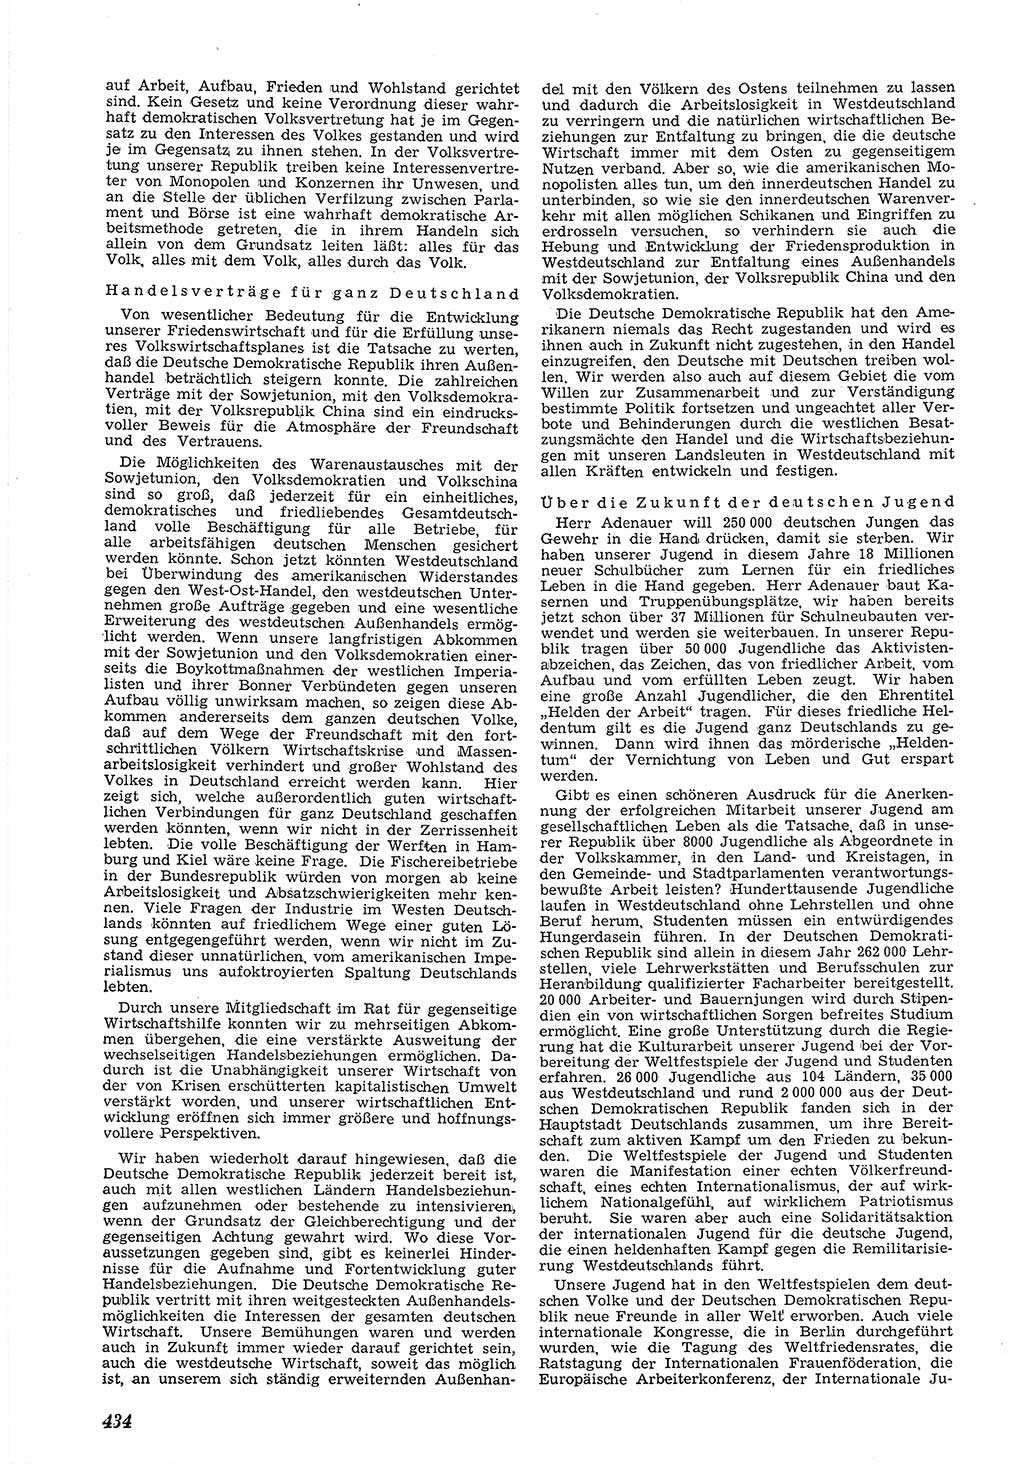 Neue Justiz (NJ), Zeitschrift für Recht und Rechtswissenschaft [Deutsche Demokratische Republik (DDR)], 5. Jahrgang 1951, Seite 434 (NJ DDR 1951, S. 434)